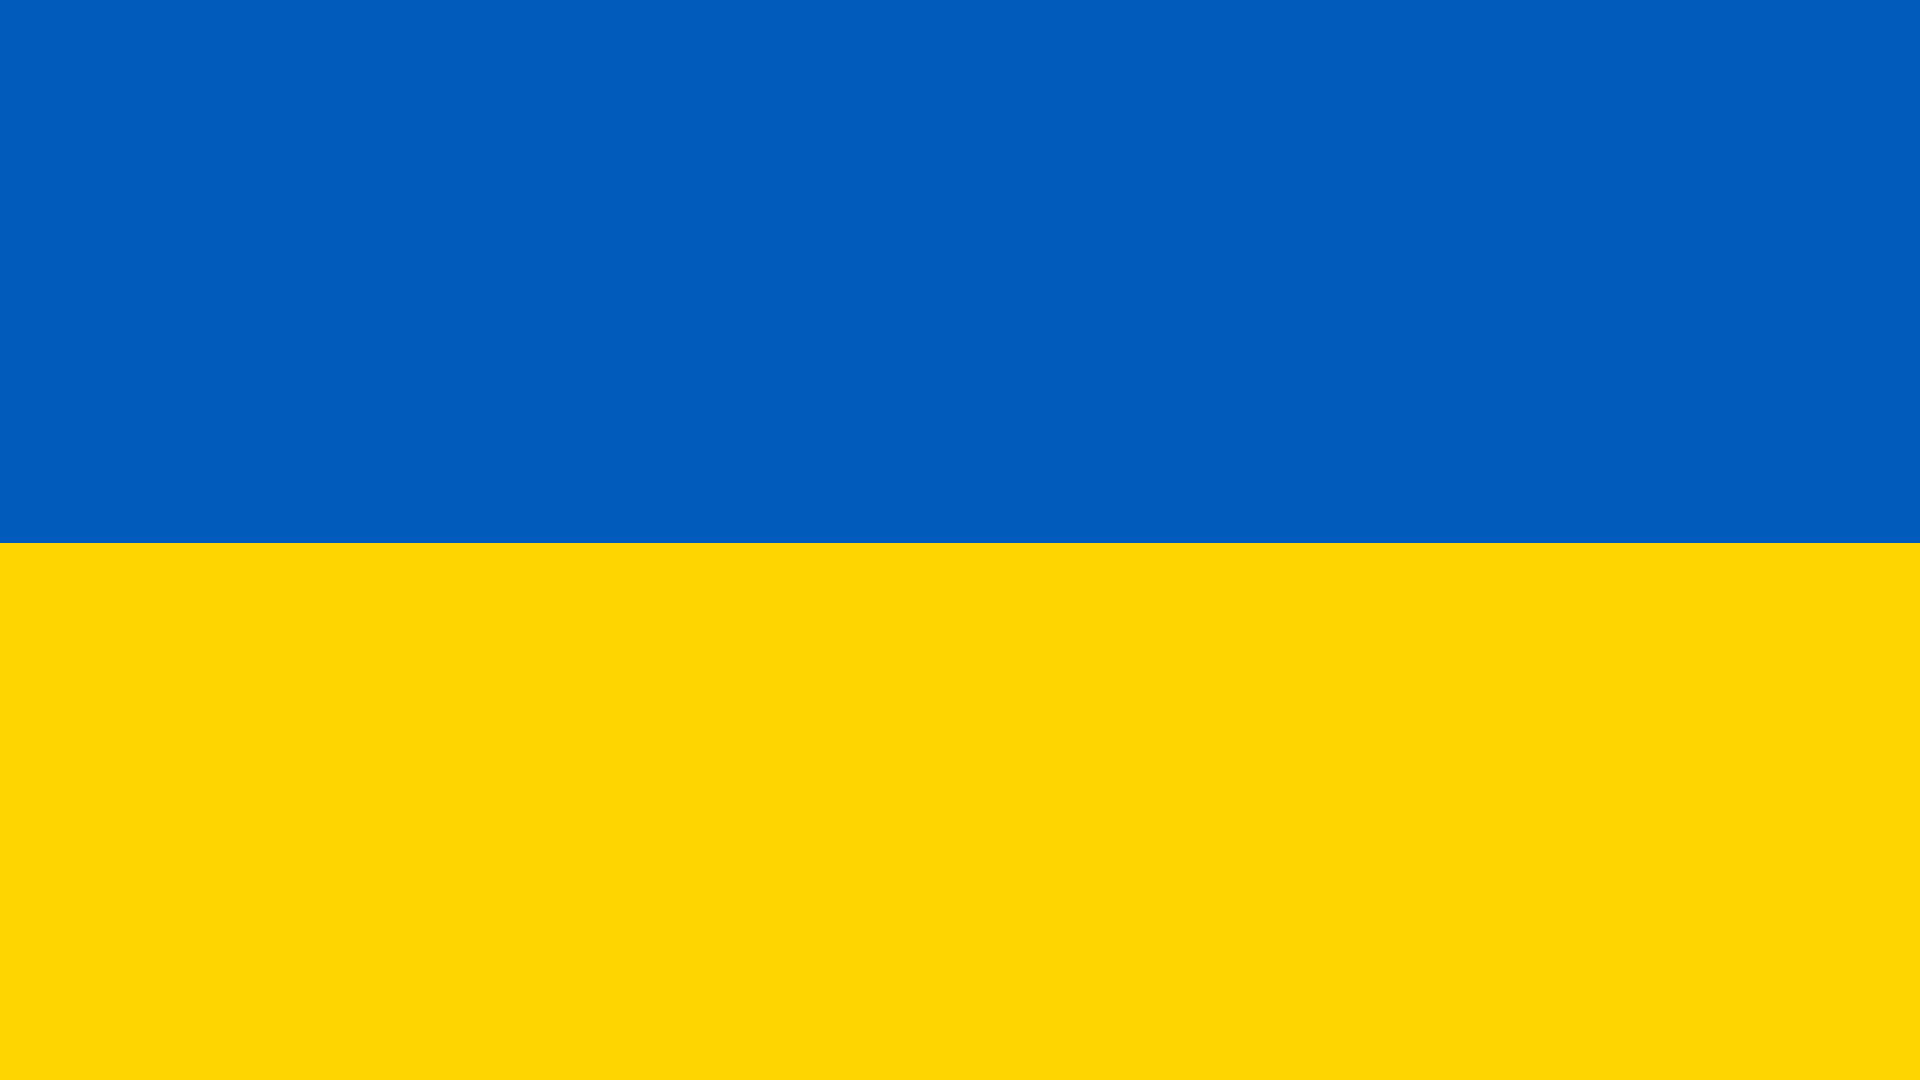 Ukraine Flag File Of Jpg Wikipedia Just